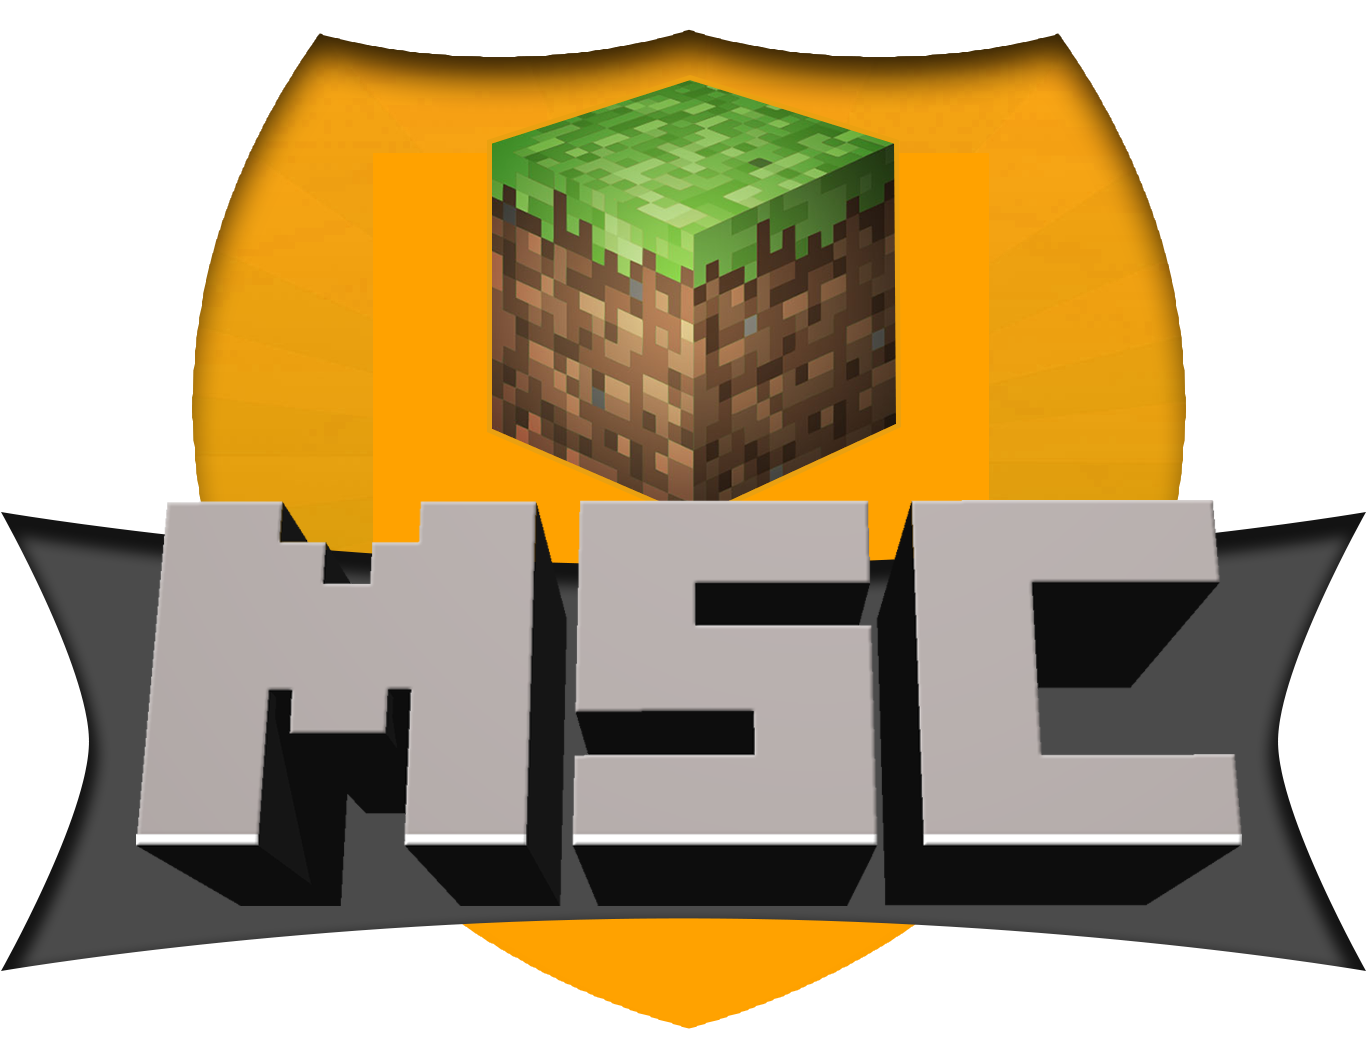 Minecraft logo png. Значок сервера. Картинка для сервера майнкрафт. Иконка для сервера майнкрафт. Сервер картинка.